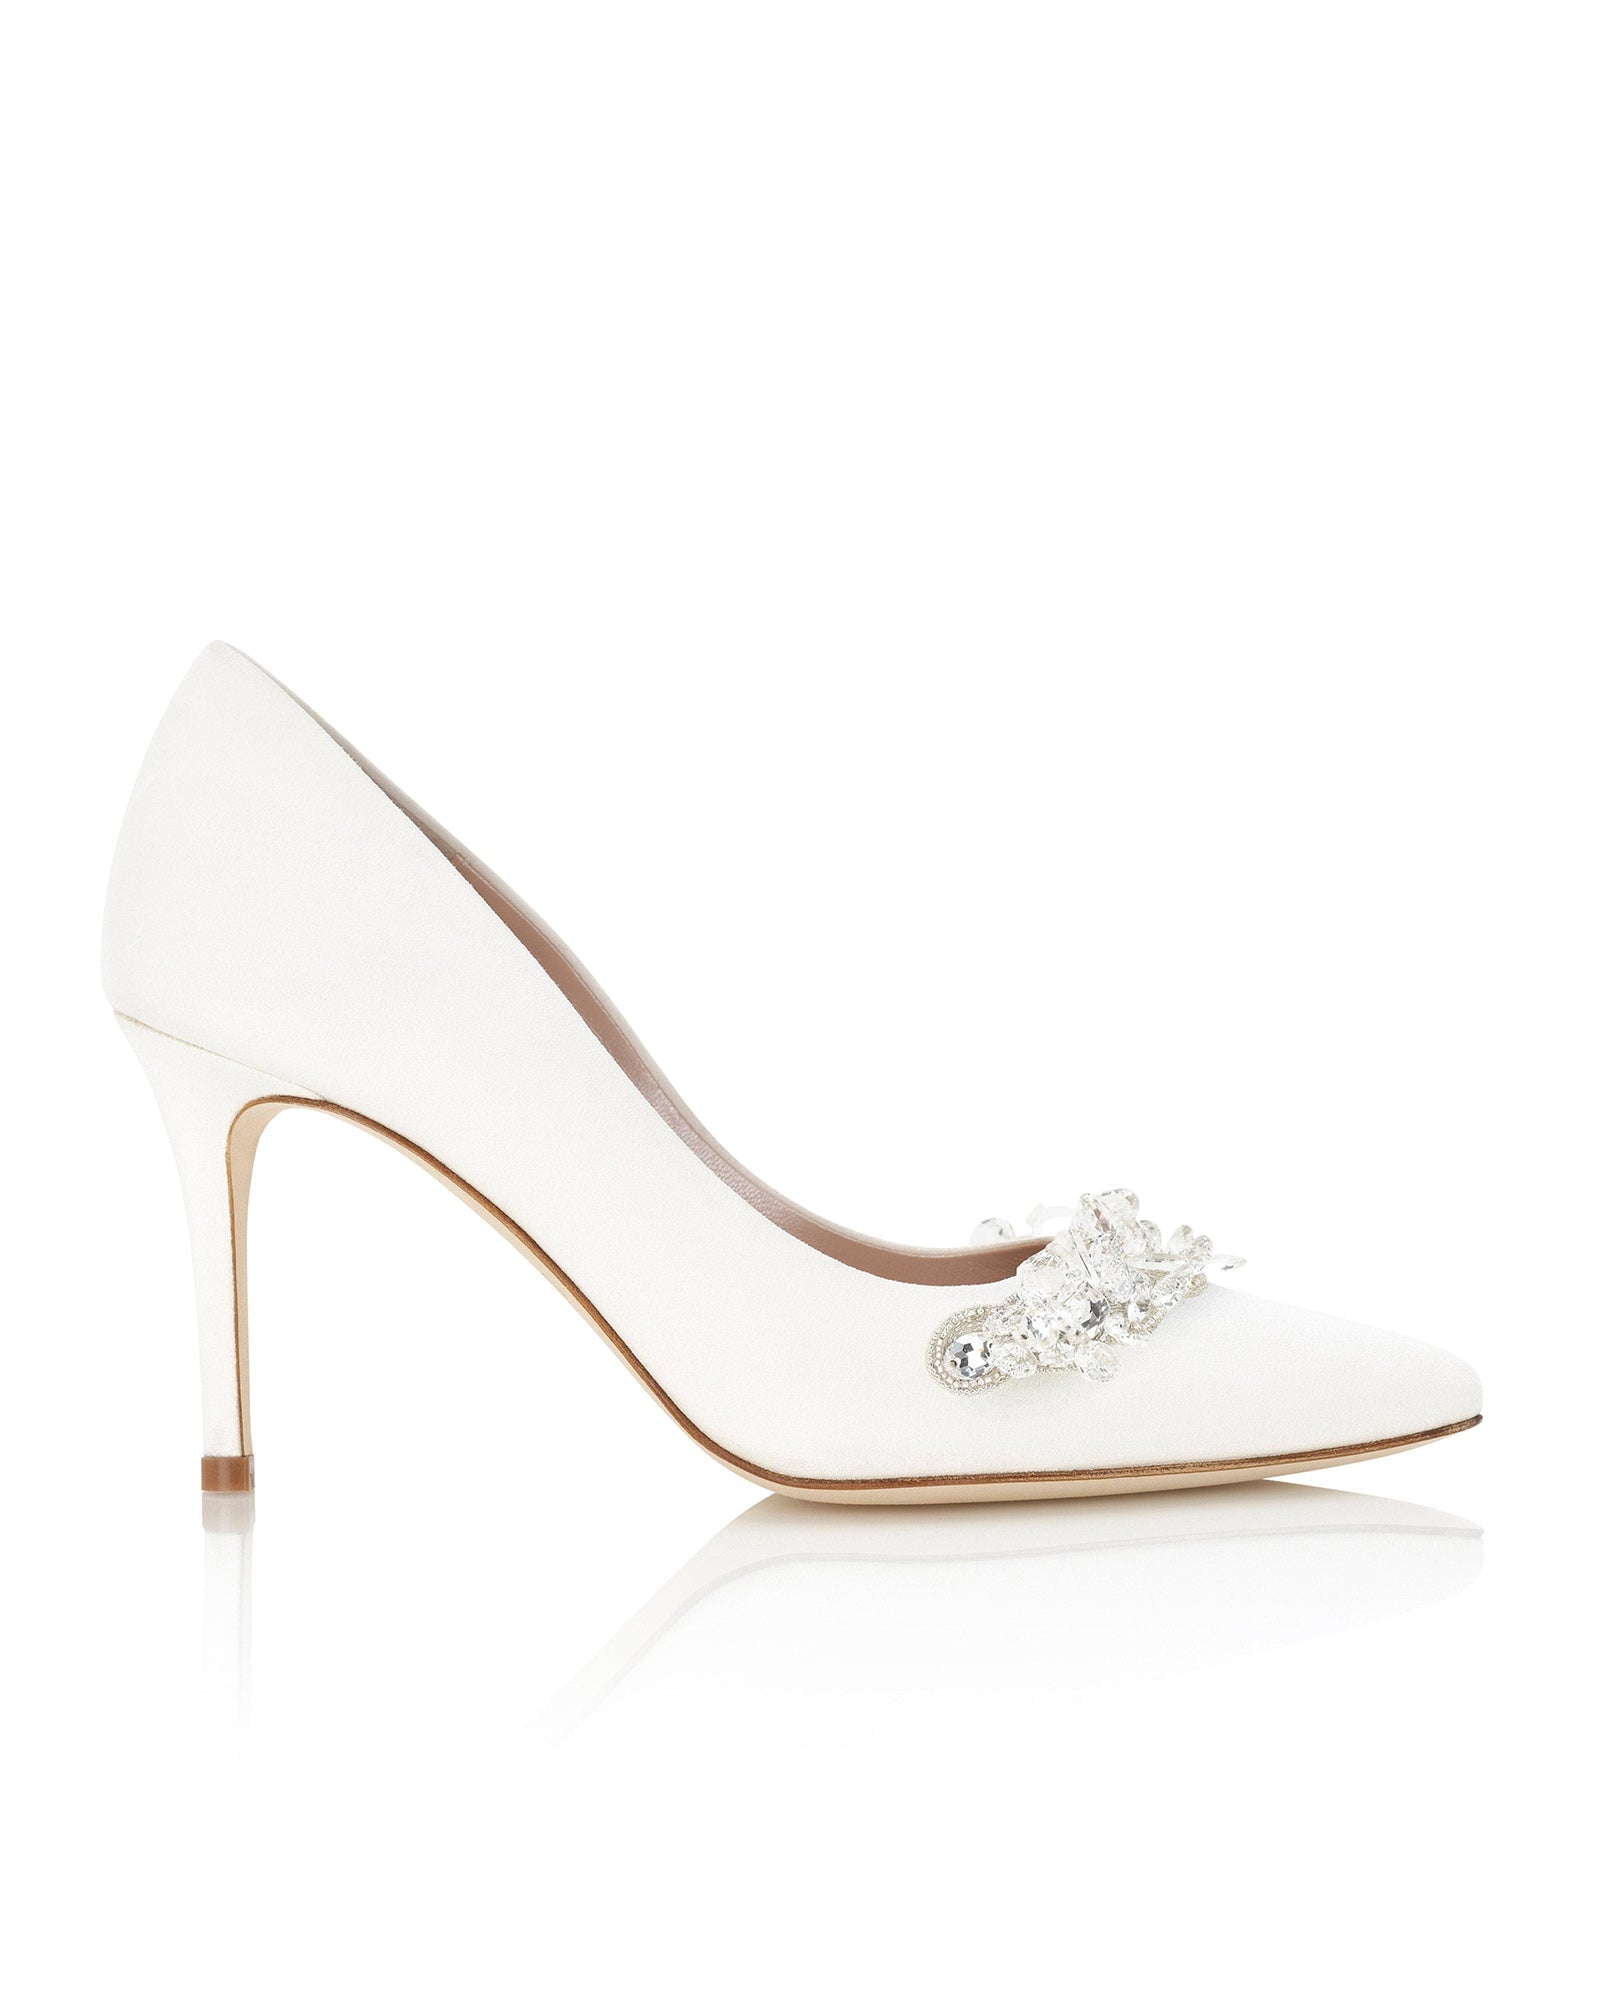 Sienna Mid Bridal Shoe Embellished Ivory Court Shoe  image